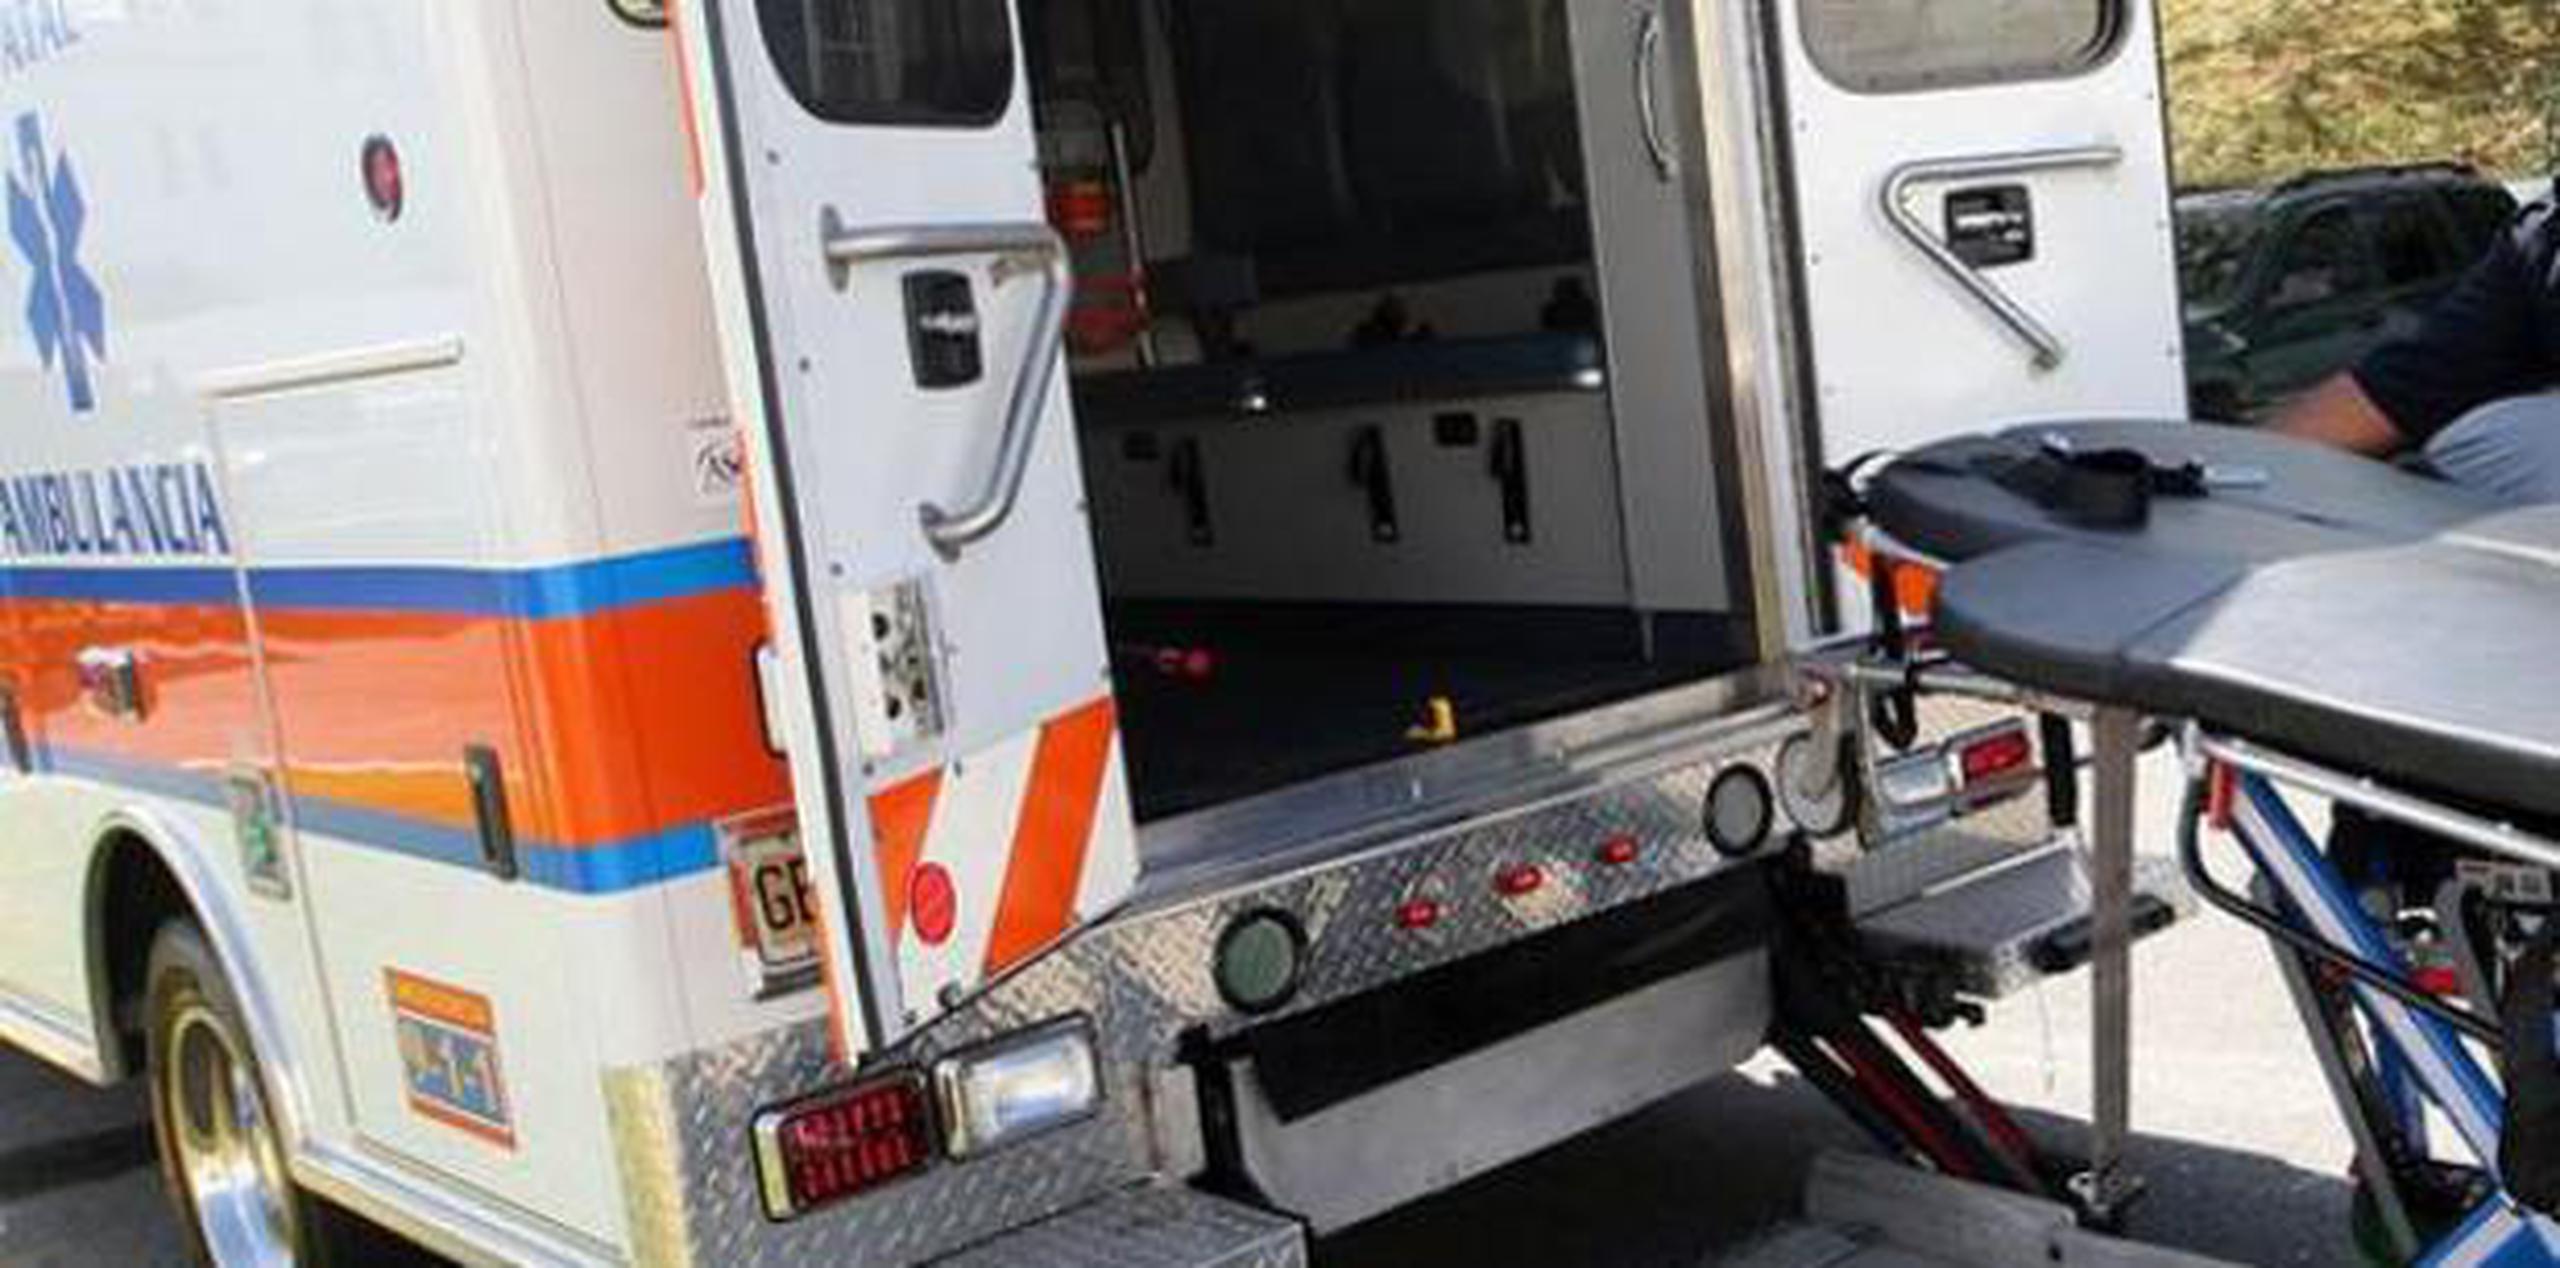 También se anunció la adquisición de cinco ambulancias nuevas que reemplazarán las que sufrieron daños irreparables en el mismo periodo. (Archivo)

